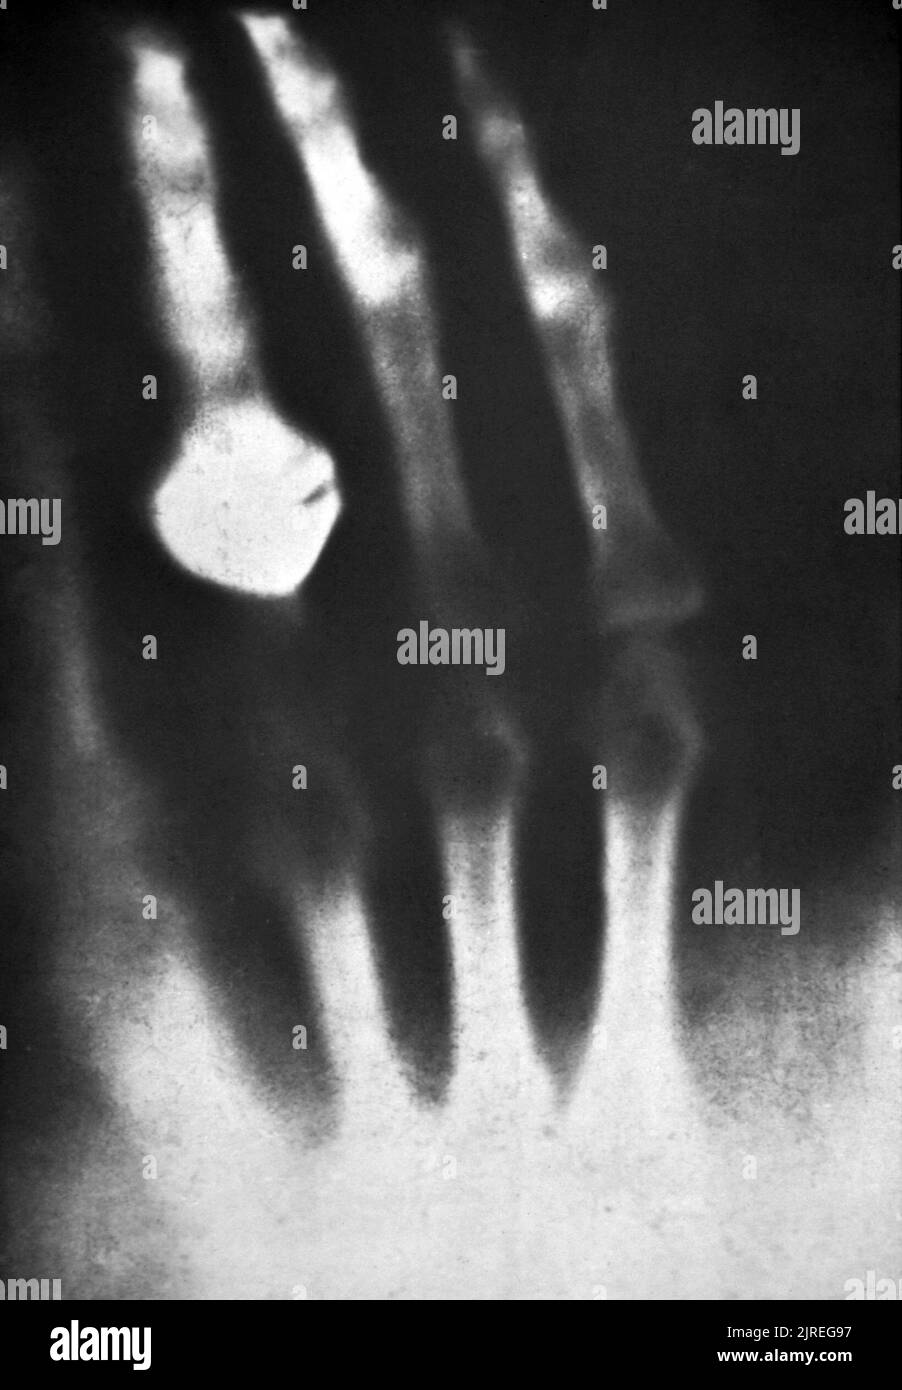 Prima fotografia radiografica di un essere umano (1895). L'immagine fu fatta da Wilhelm Roentgen (1845-1923) poco dopo la sua scoperta di raggi X nel 1895. Mostra la mano di sua moglie, che indossa un anello. Roentgen fu professore di fisica a Wurzburg, Germania. Mentre utilizzava un tubo di scarica elettrica in una stanza buia, notò che una scheda rivestita di platinocianuro di bario si illuminava quando il tubo era acceso. L'effetto non è stato bloccato da una parete interposta, o anche da un sottile foglio di metallo. Roentgen definì questa radiazione a raggi X e utilizzò la radiazione della mano di sua moglie come prova per mostrare ai colleghi. Foto Stock